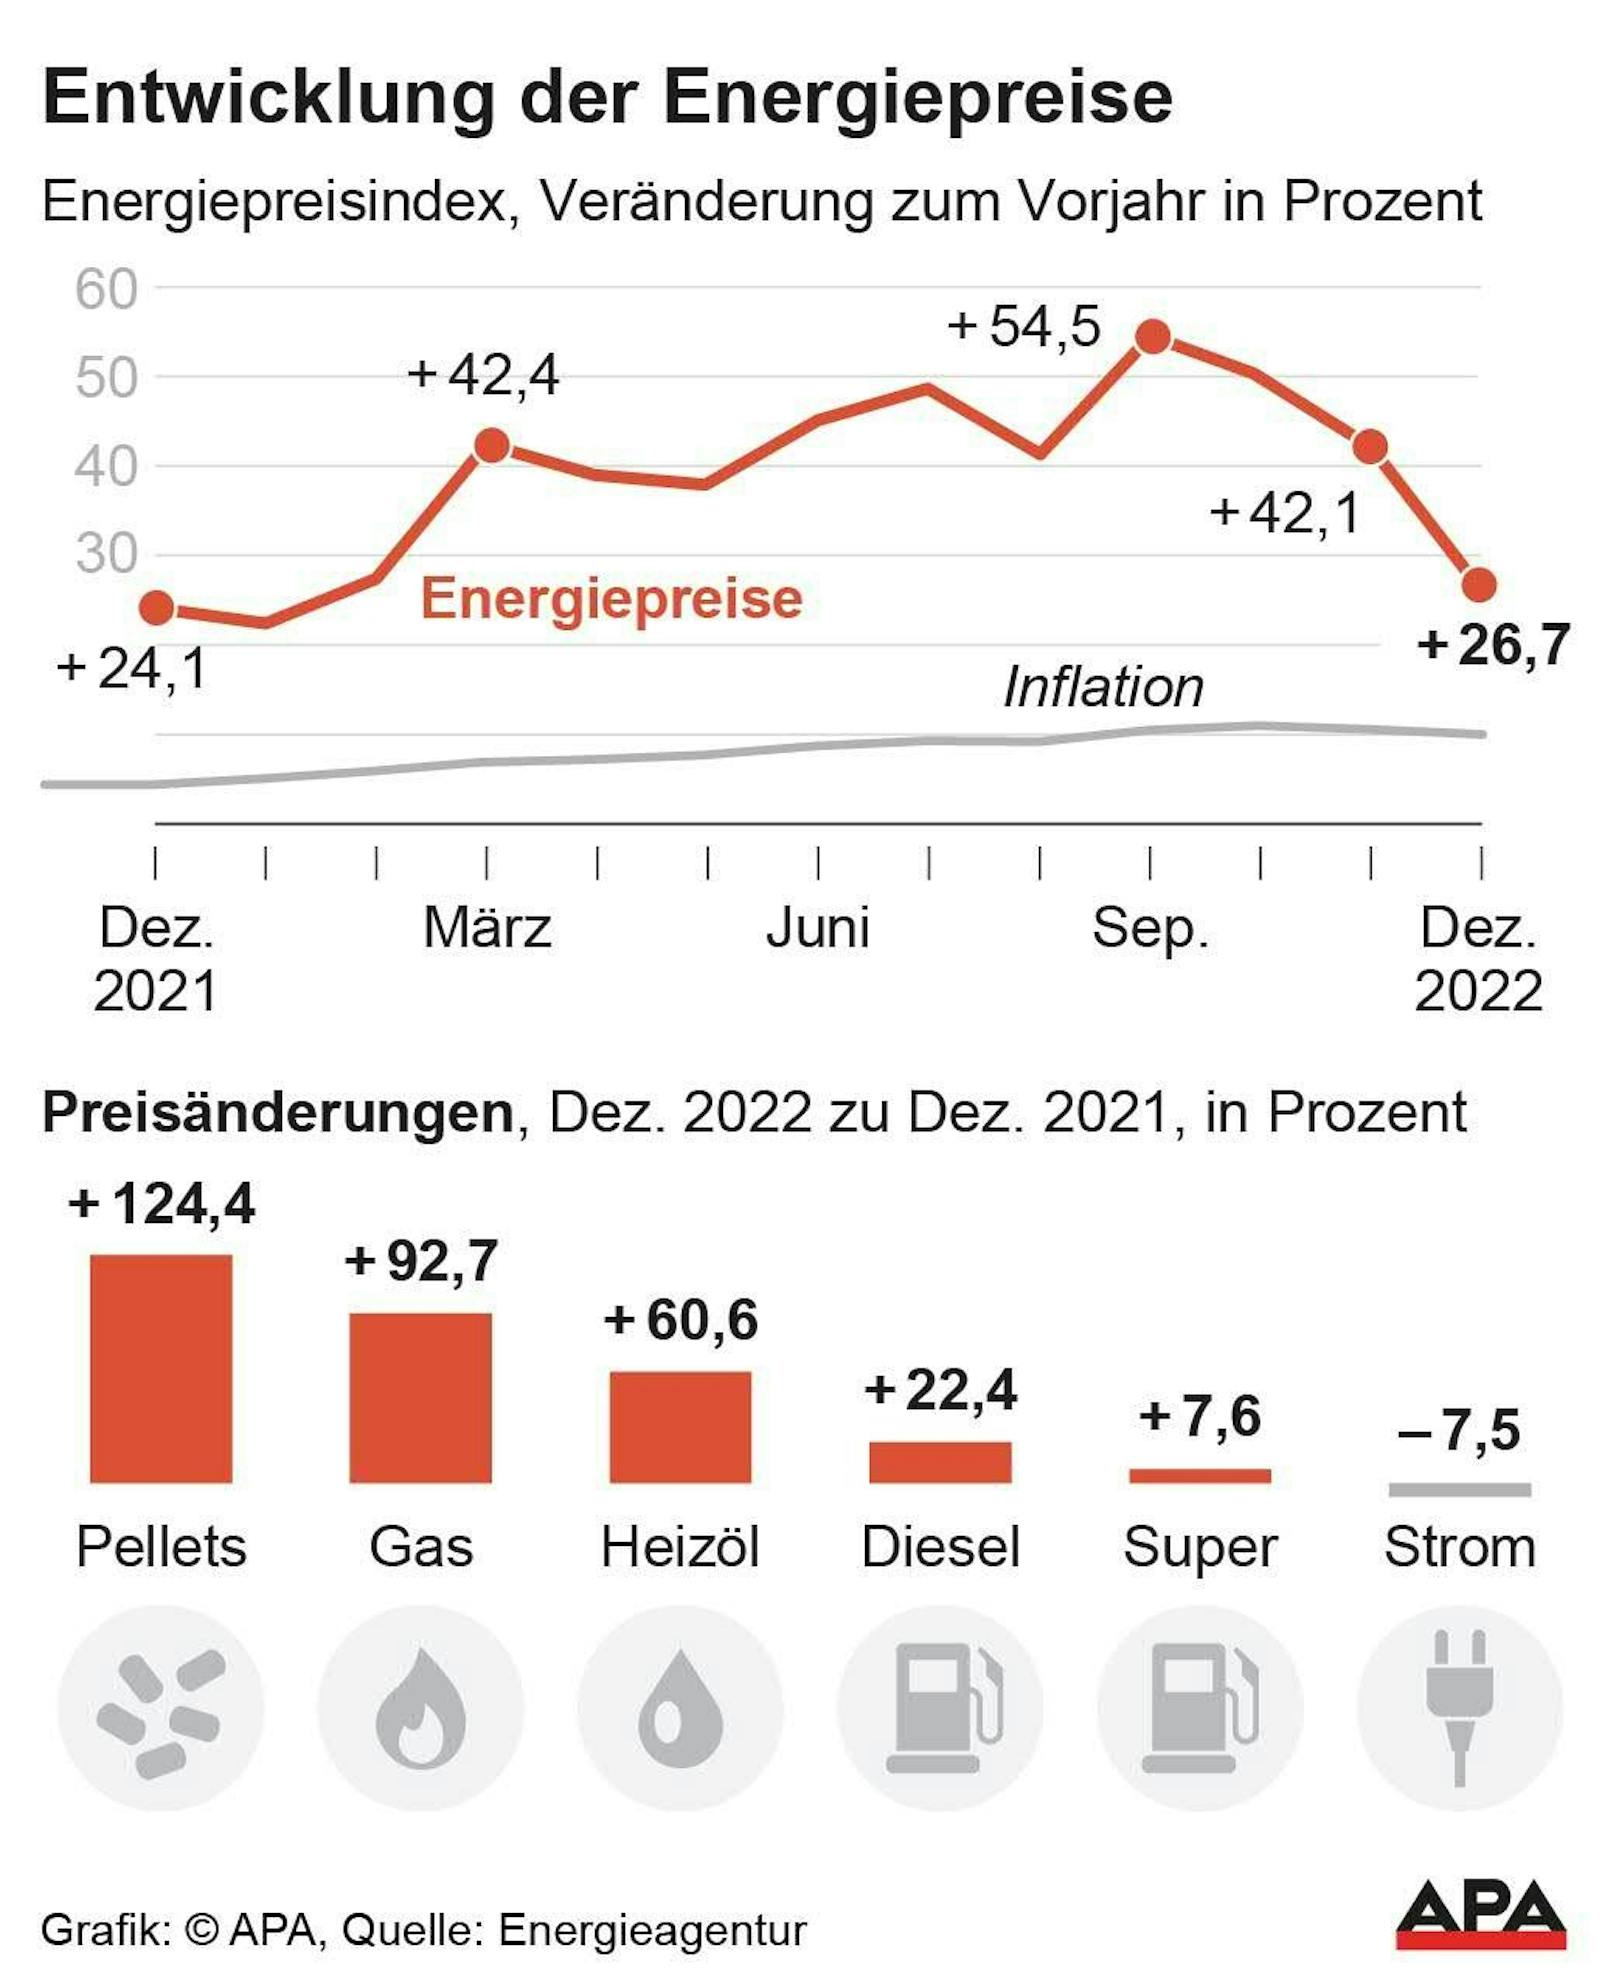 Energiepreisindex im Vergleich zur Inflation Dezember 2021-2022, Preisänderungen im Dezember nach Energieträgern, Quelle: Energieagentur